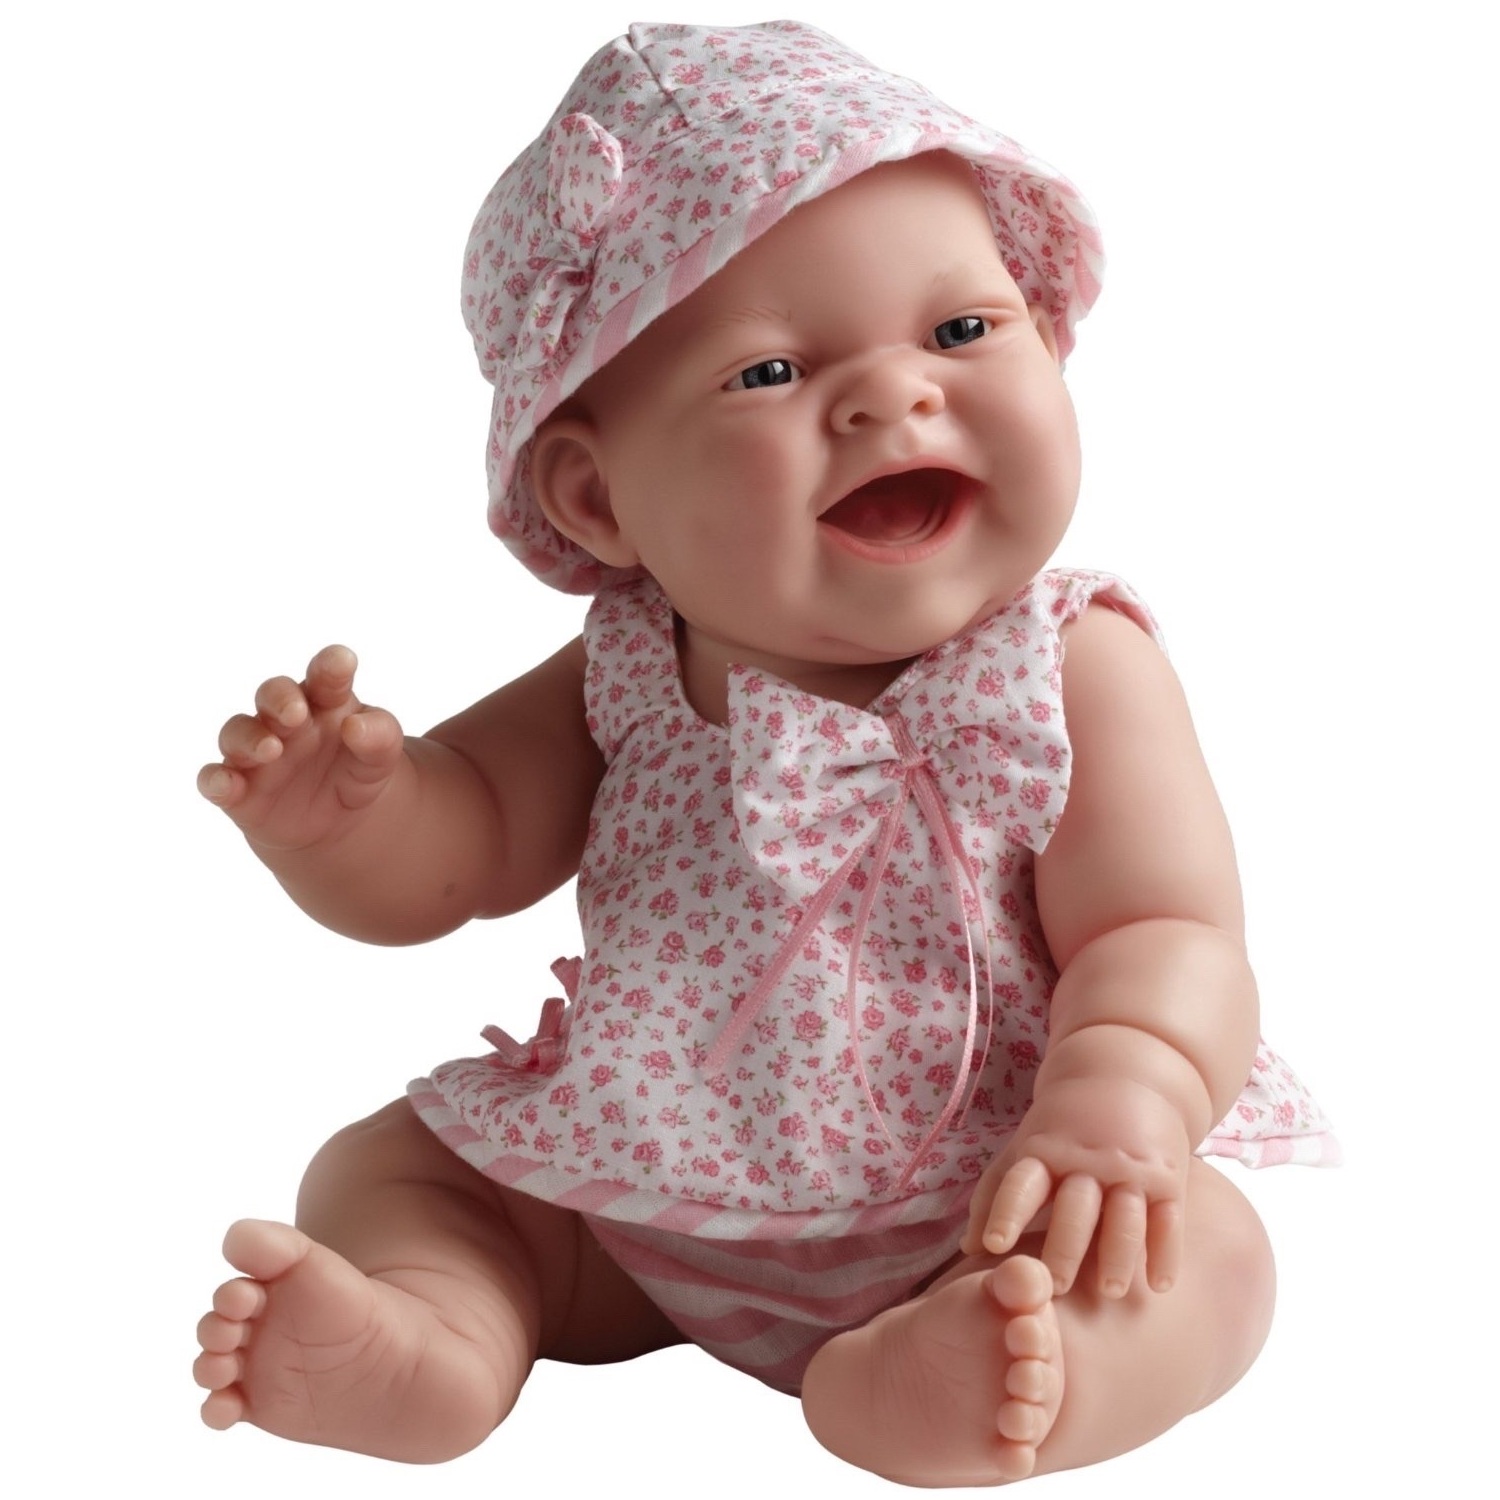 Виниловый пупс. Кукла Berenguer виниловая 38см Lola (18725). Кукла JC Toys Berenguer Newborn, 36 см, jc18505.